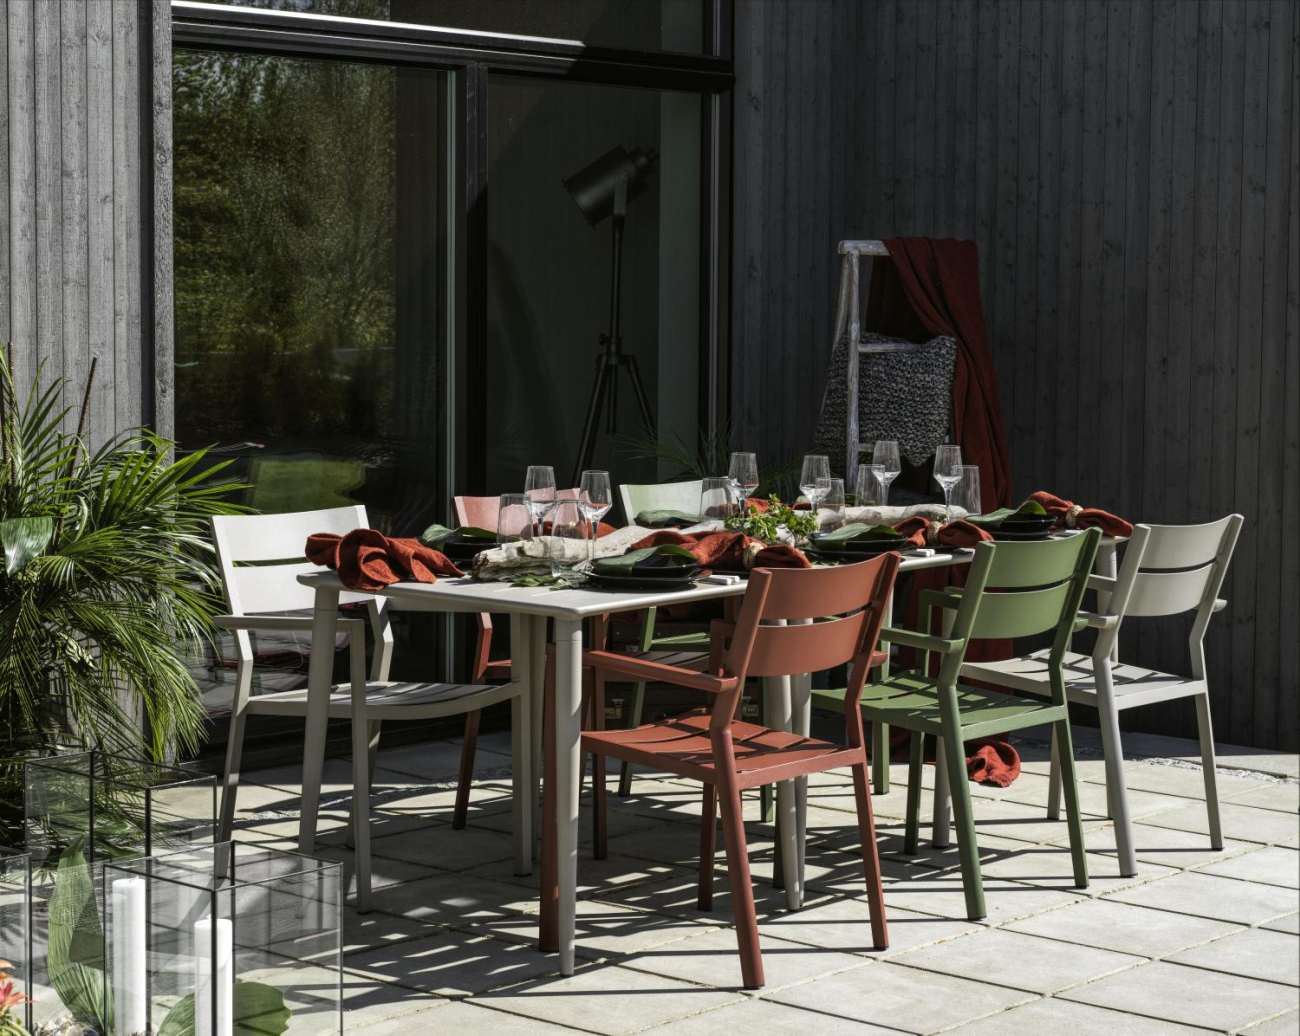 Der Gartenstuhl Delia überzeugt mit seinem modernen Design. Gefertigt wurde er aus Metall, welches einen roten Farbton besitzt. Das Gestell ist auch aus Metall und hat eine rote Farbe. Die Sitzhöhe des Stuhls beträgt 43 cm.